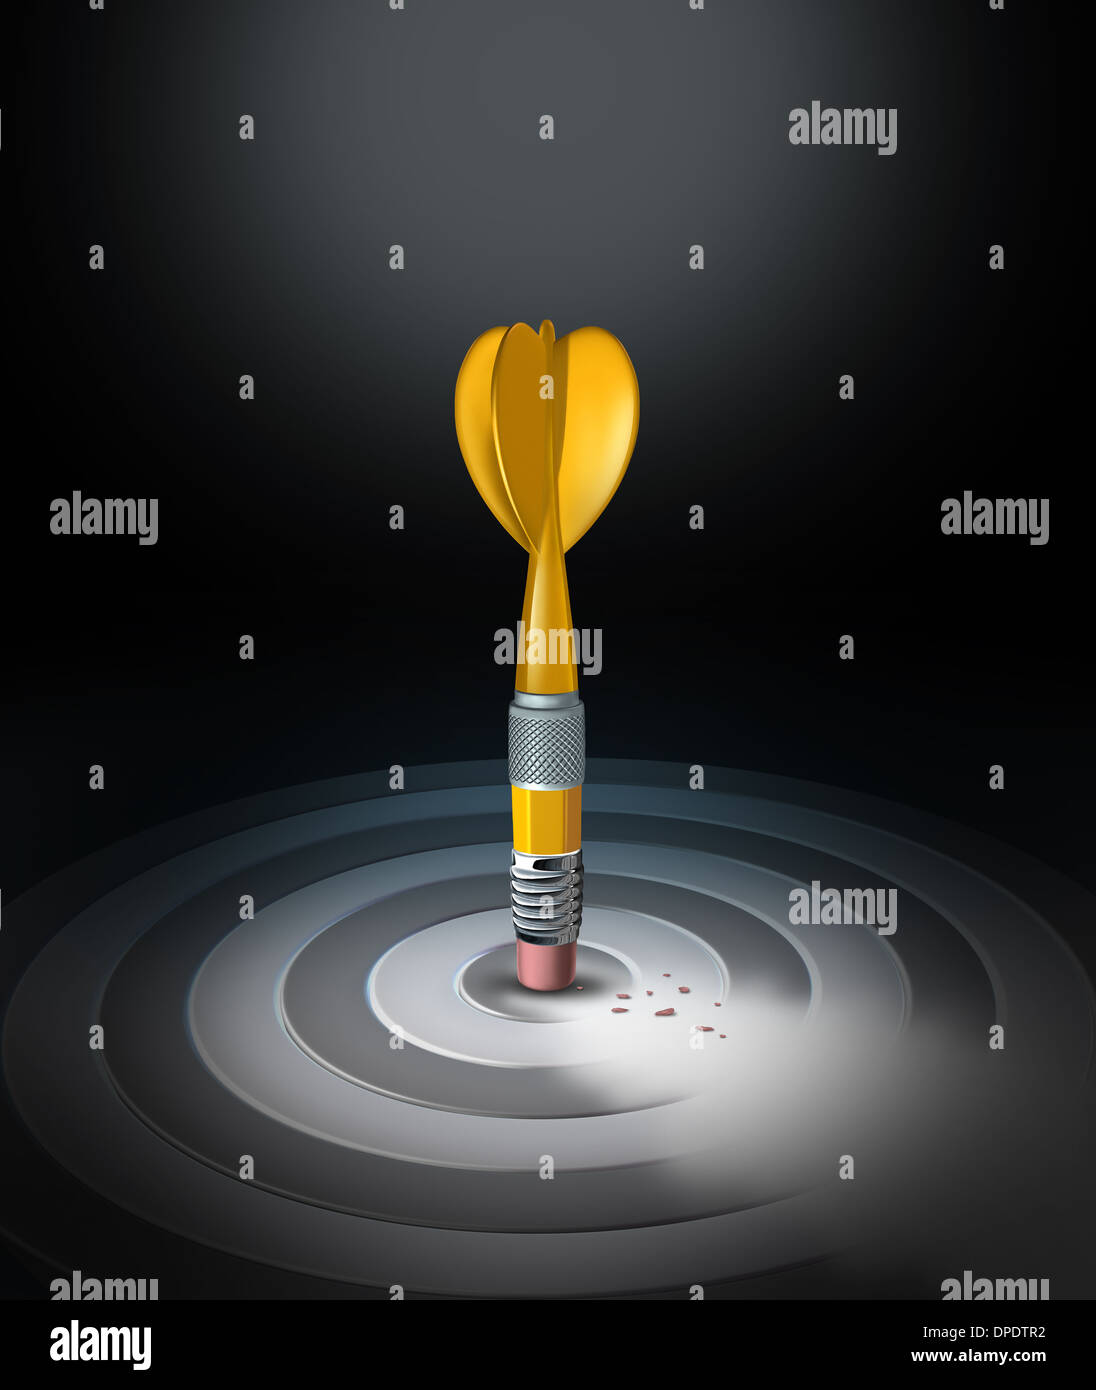 Changement de stratégie business concept avec une gomme à crayon jaune en forme d'un effacement d'une dart bulls eye cible sous une nouvelle gestion res Banque D'Images